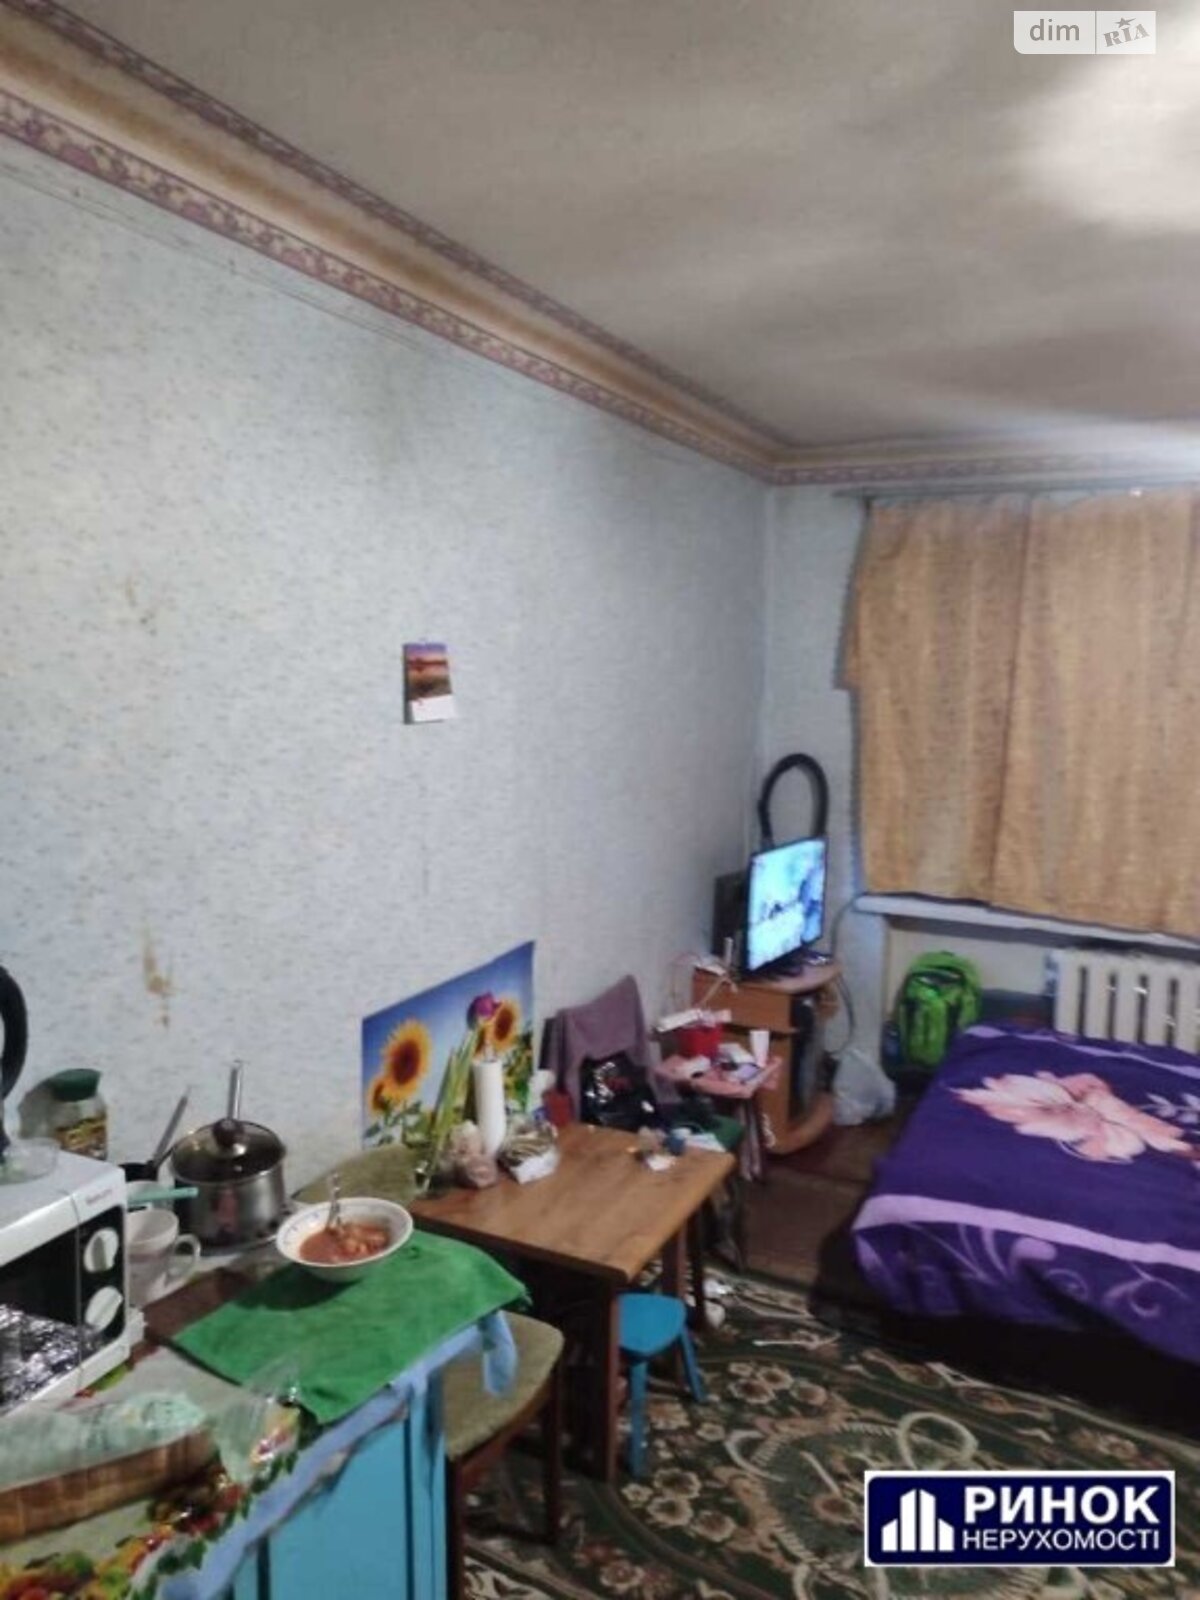 Комната в Полтаве, на ул. Духова в районе 5-я школа на продажу фото 1